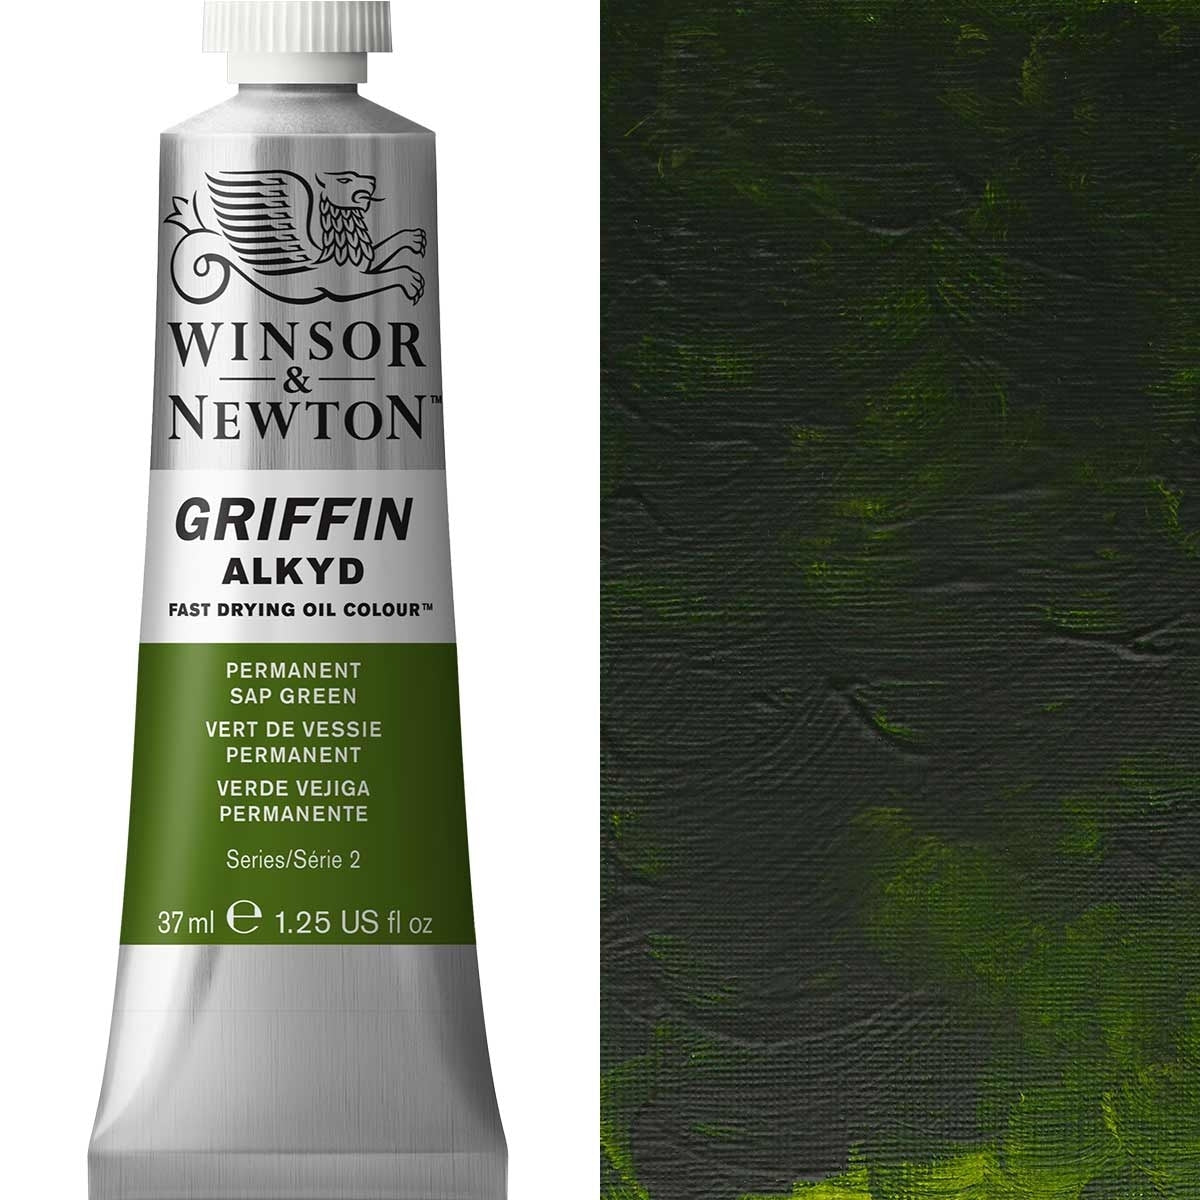 Winsor und Newton - Griffin Alkyd Ölfarbe - 37 ml - Permanent SAP Green